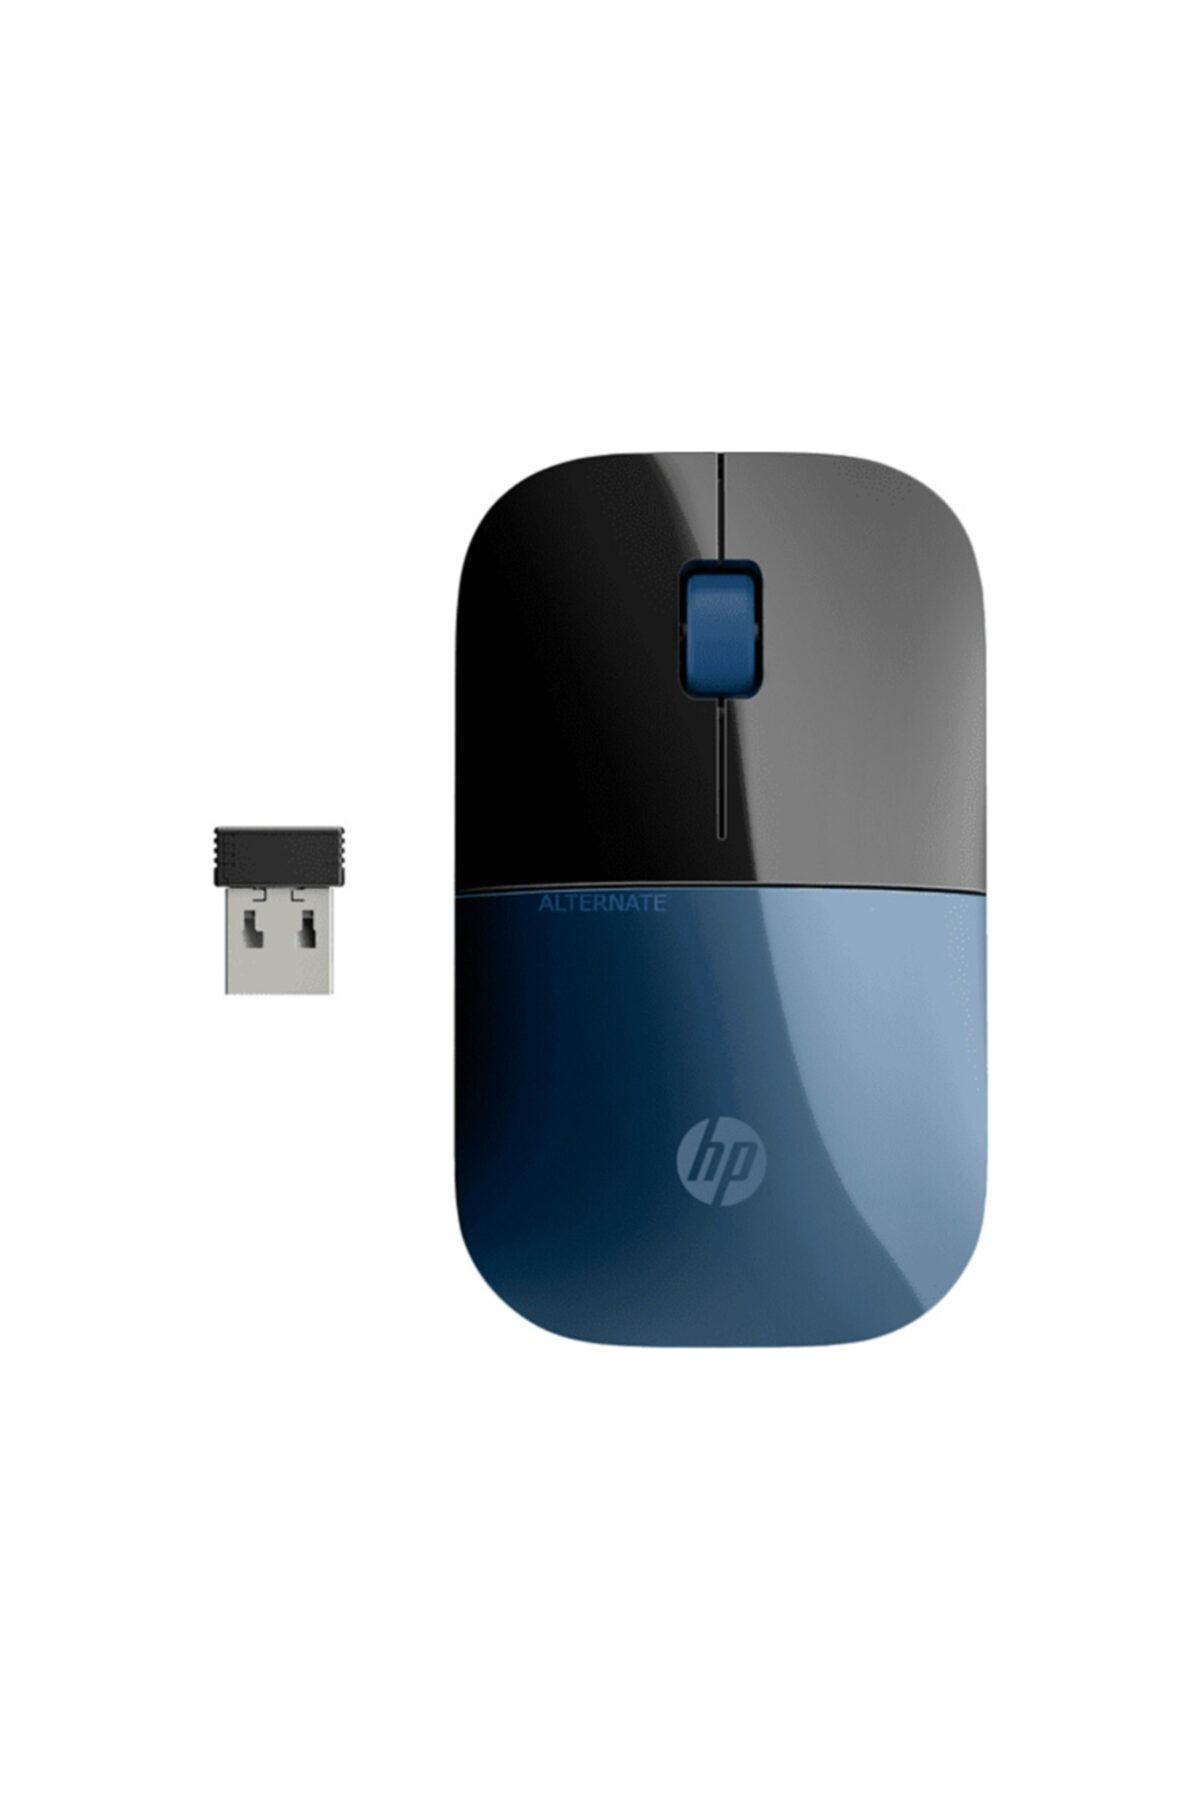 HP Marka: 7uh88aa Z3700 Kablosuz Ince Fare, Mavi/siyah Kategori: Mouse